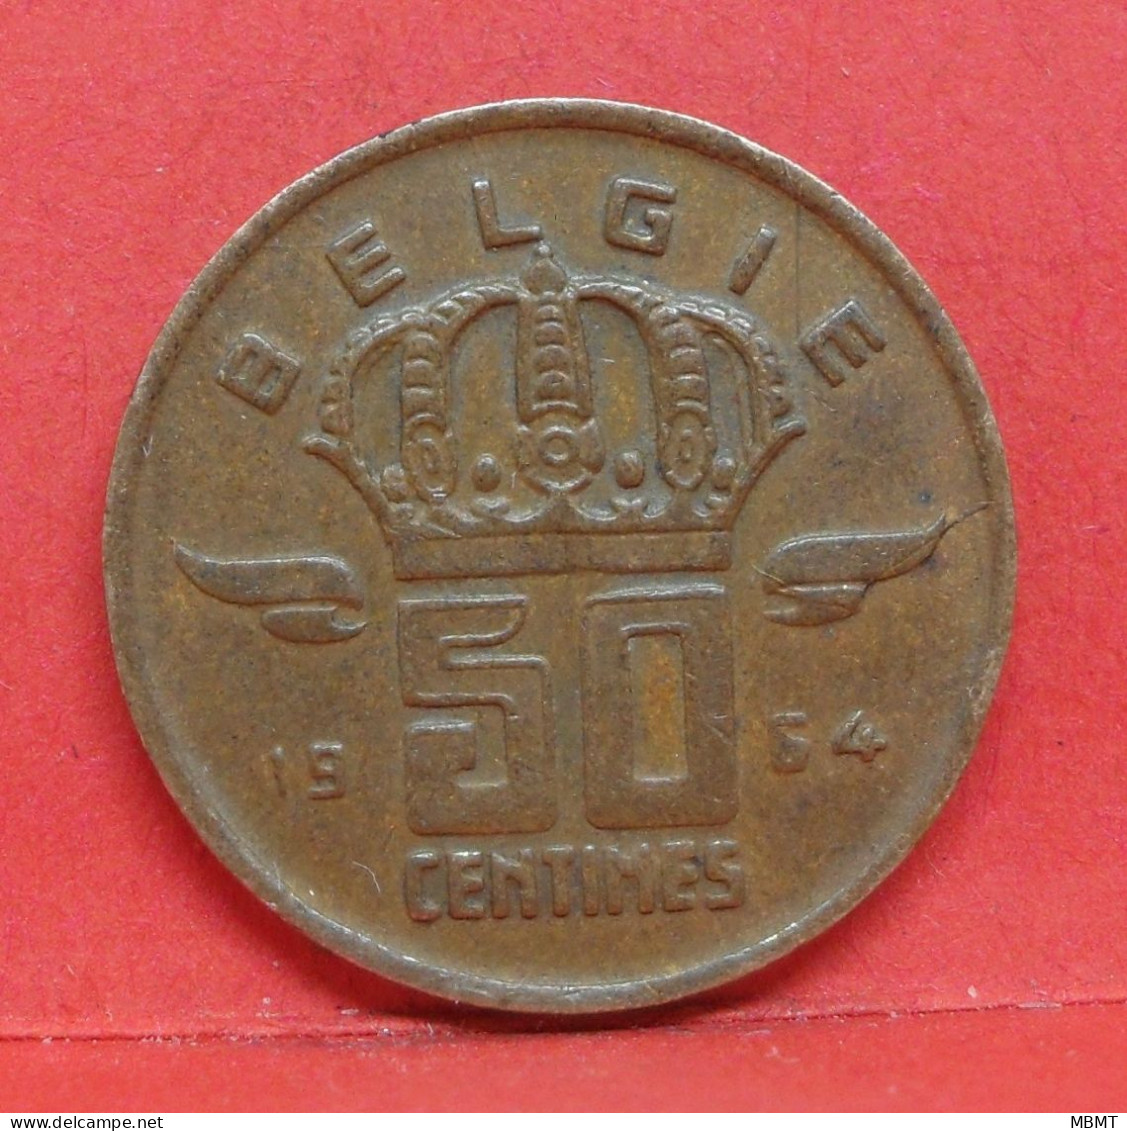 50 Centimes 1964 - TTB - Pièce Monnaie Belgie - Article N°1884 - 50 Cent